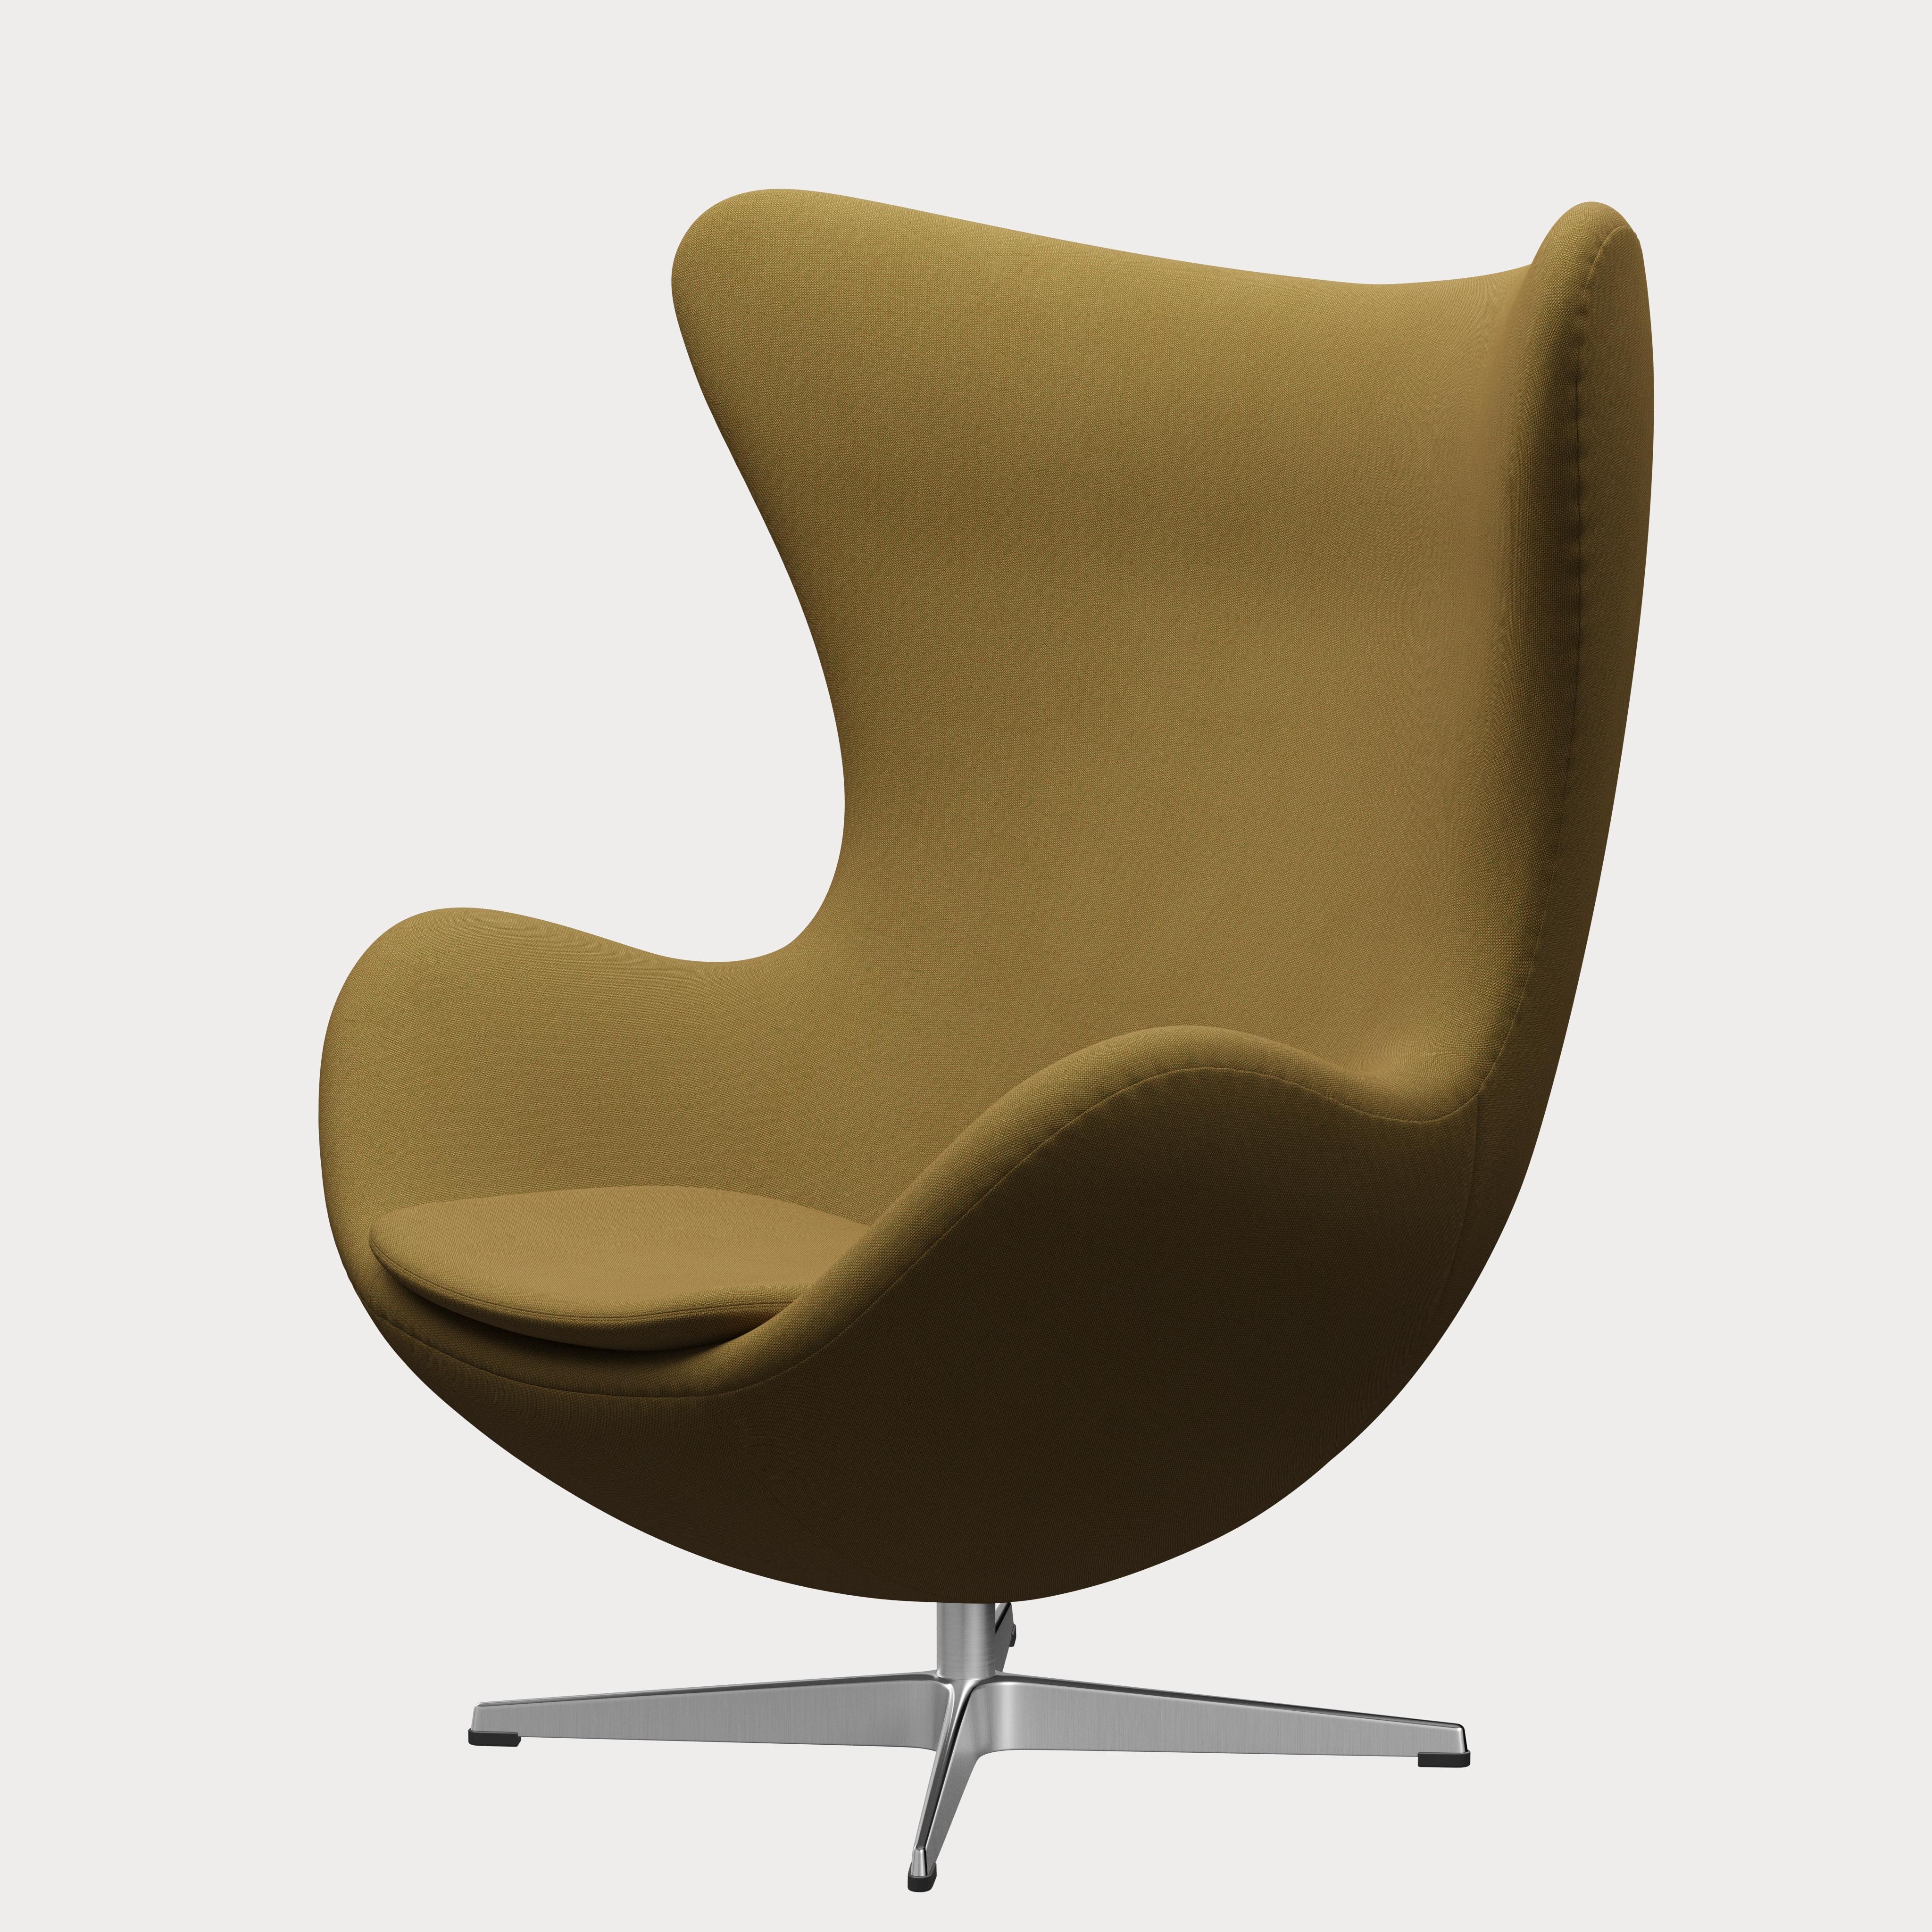 Metal Arne Jacobsen 'Egg' Chair for Fritz Hansen in Fabric Upholstery (Cat. 1) For Sale